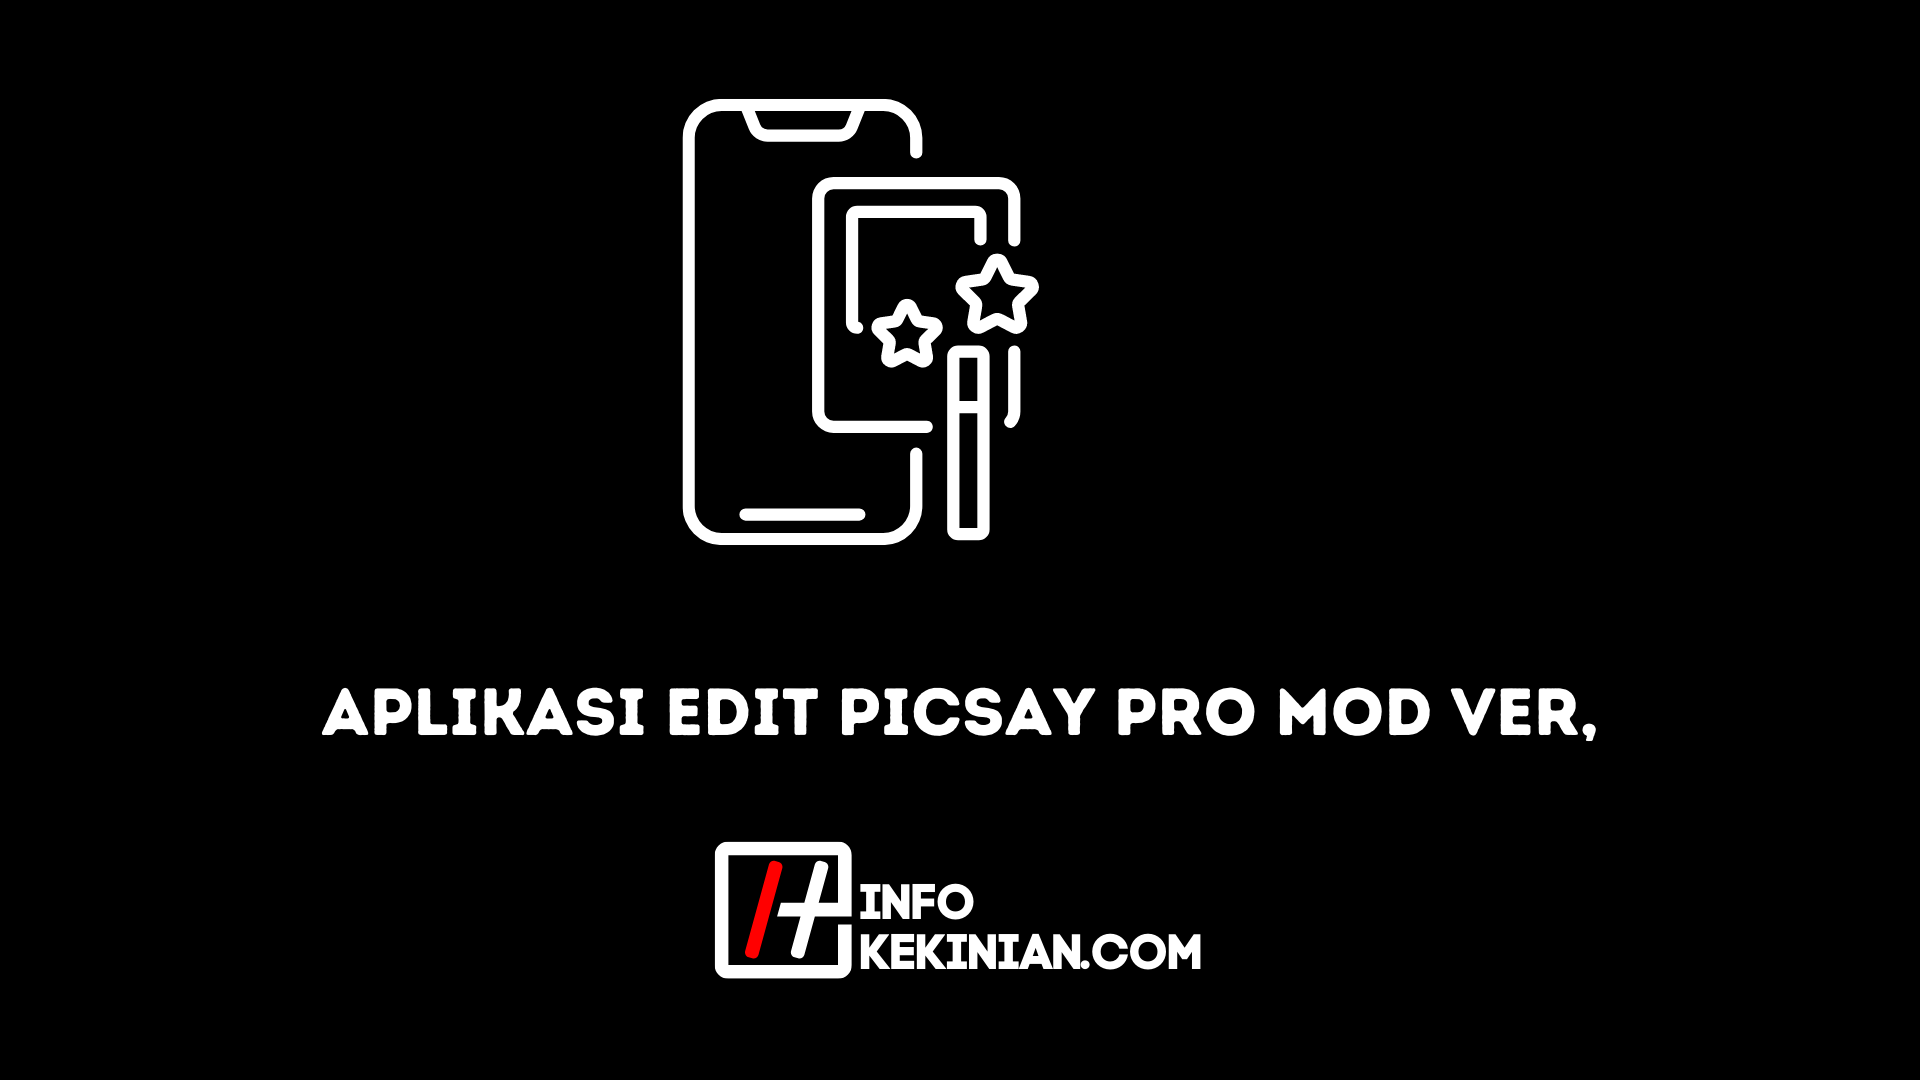 Editar aplicación Picsay Pro Mod Ver, ¡Editor más cerca!